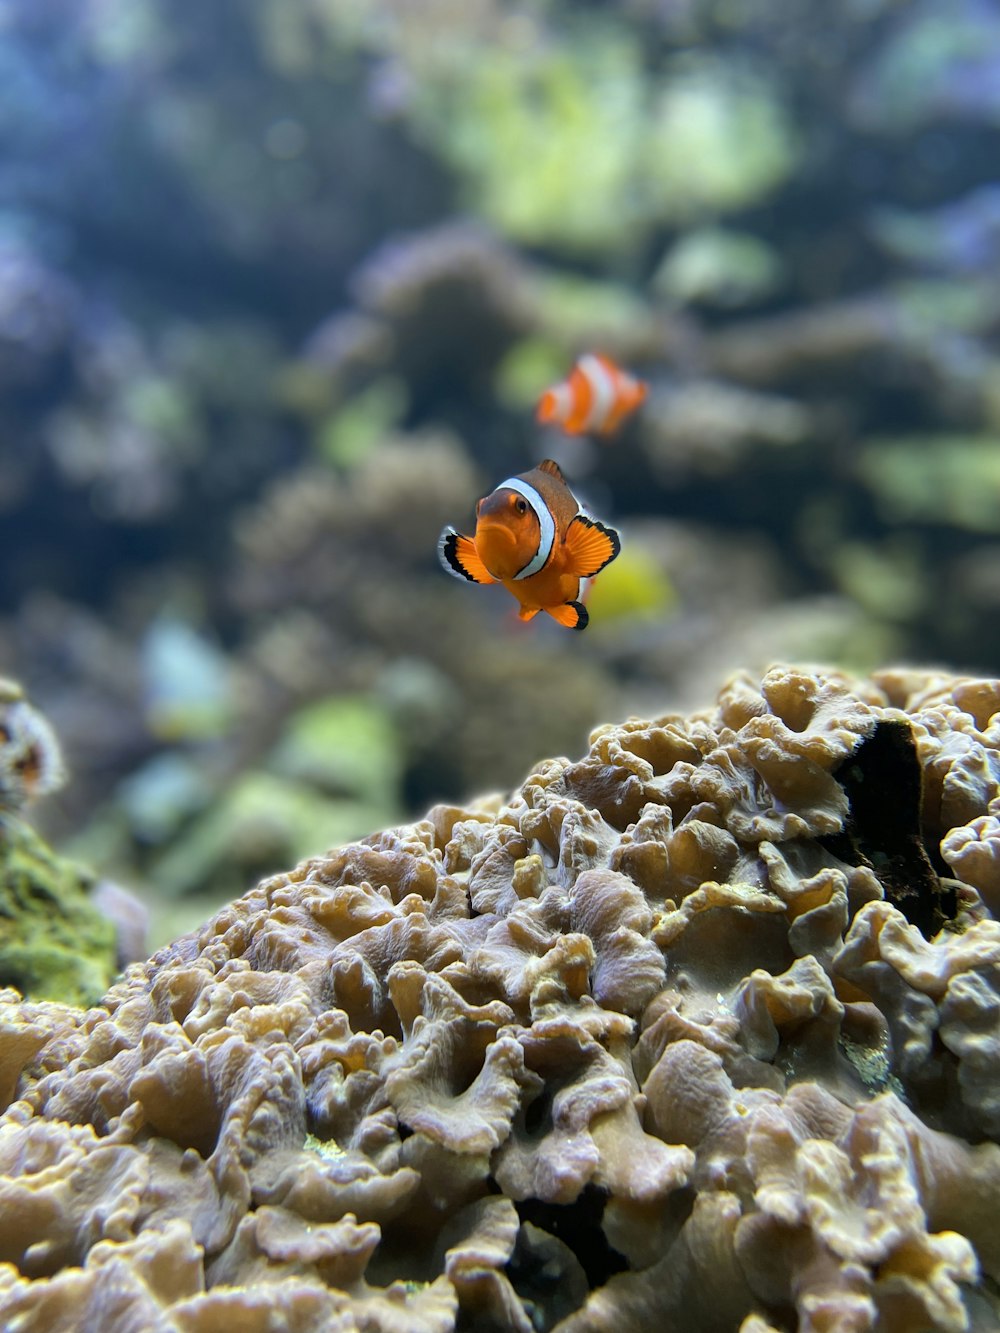 茶色のサンゴ礁のオレンジと白のカクレクマノミ